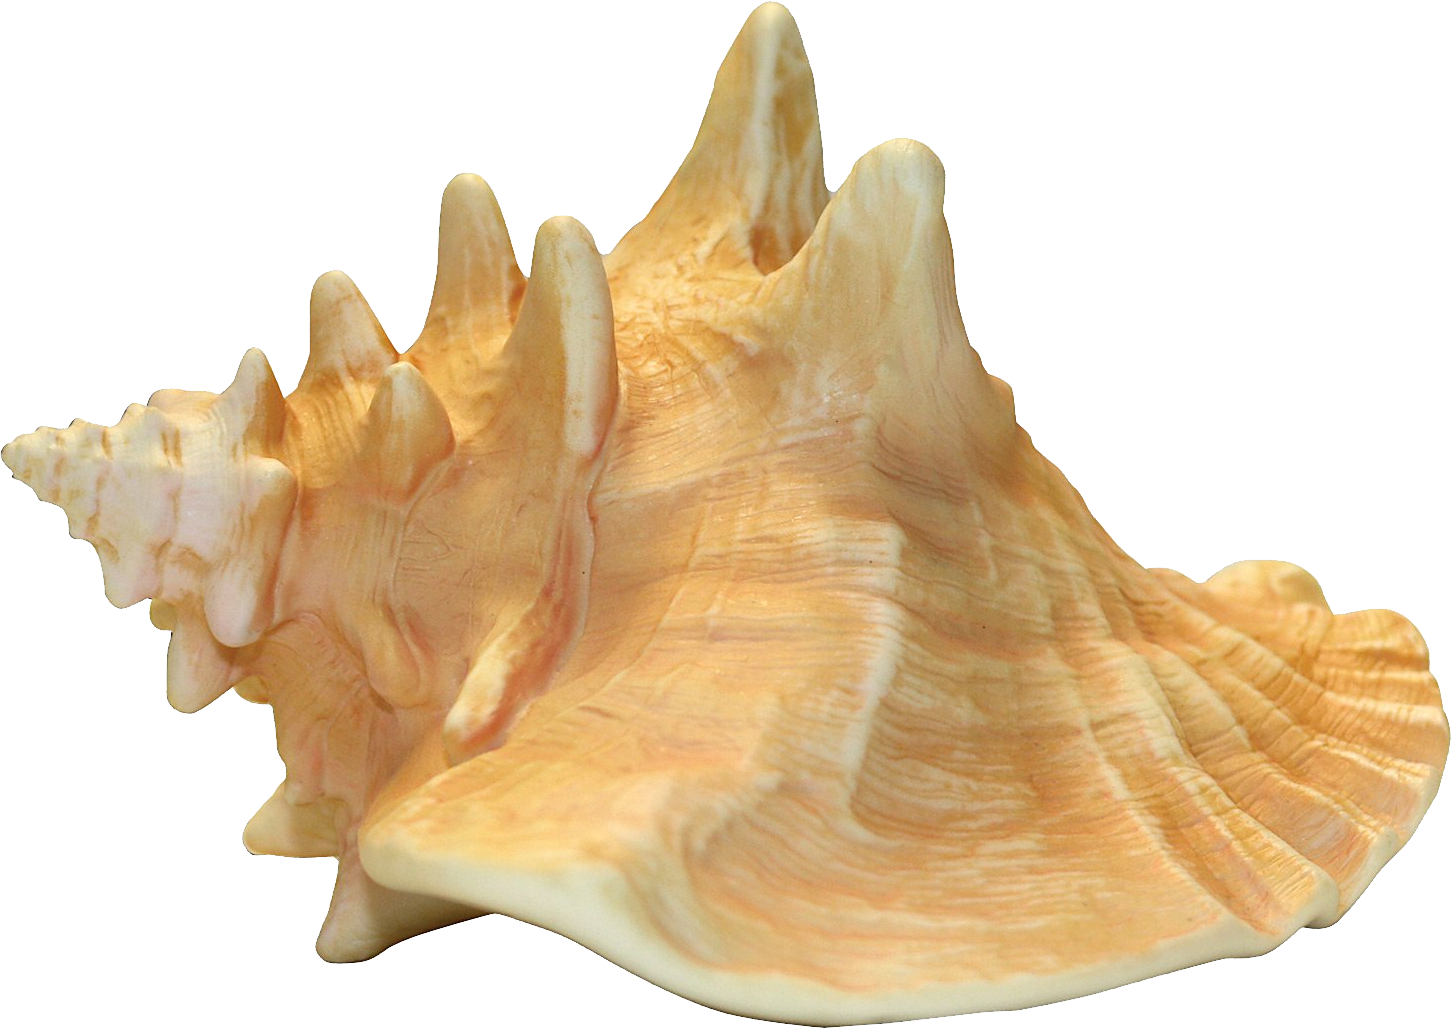 Immagine Trasparente del PNG della shell della conchiglia di mare